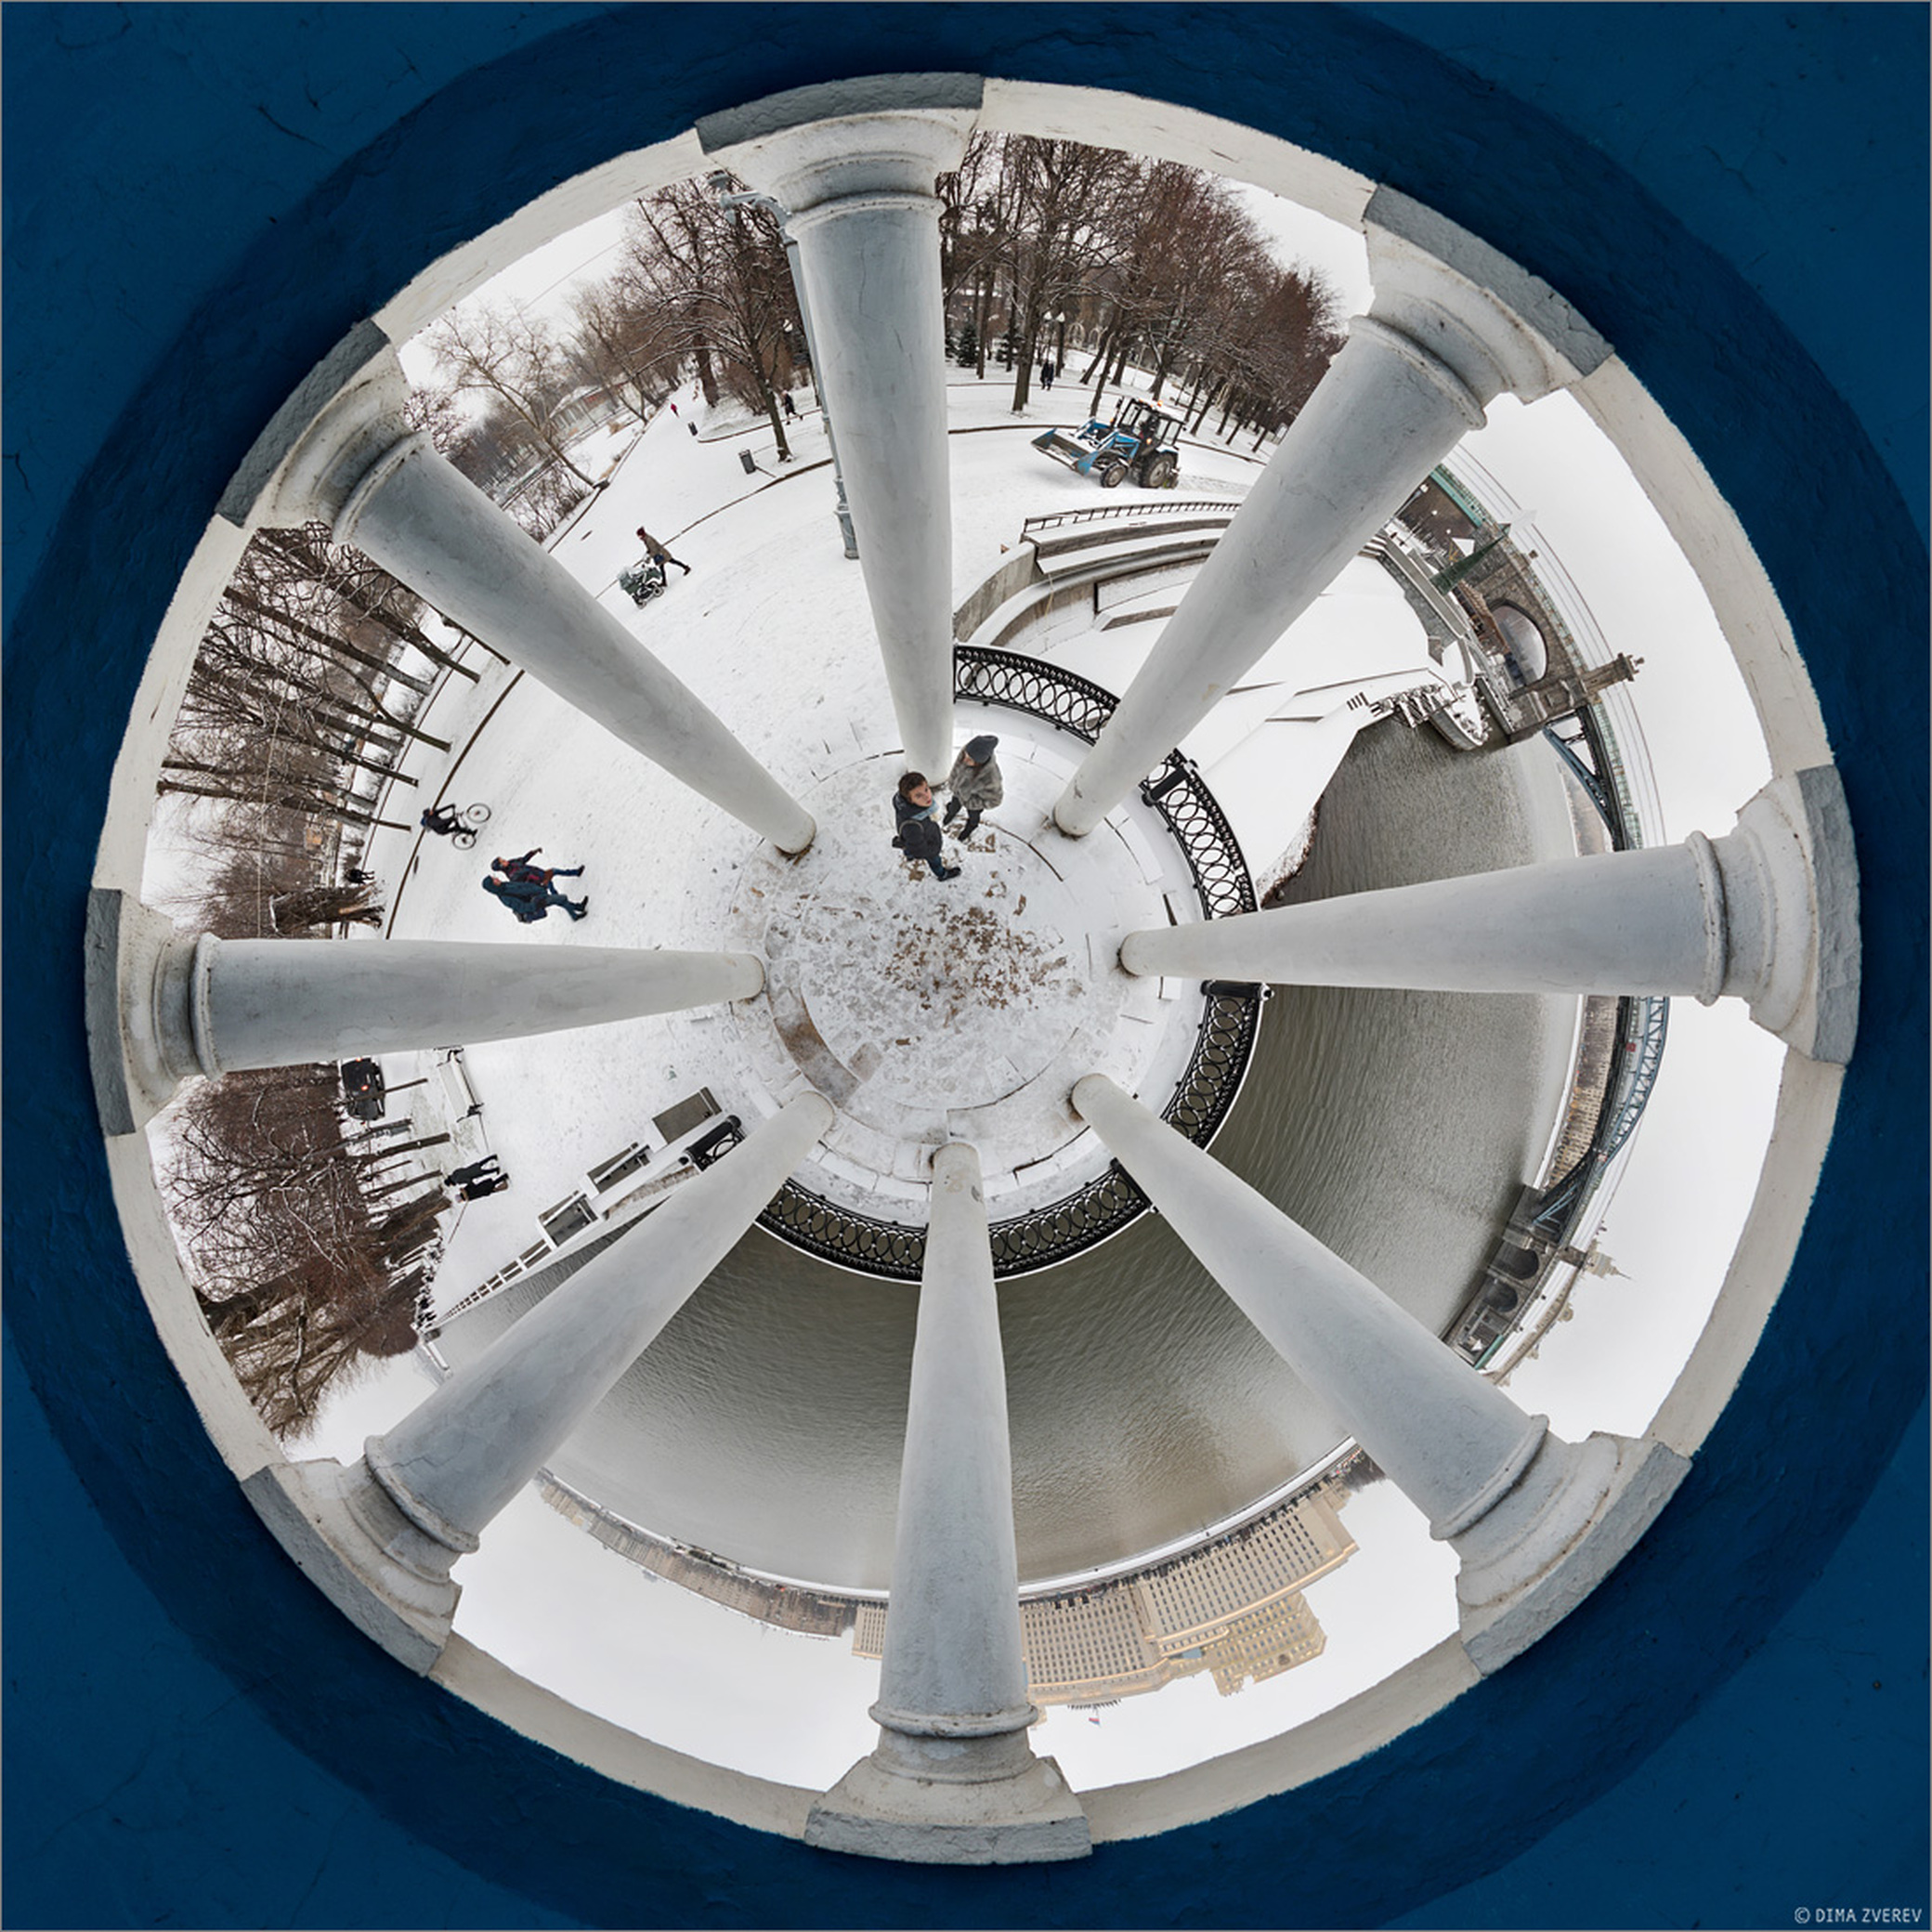 Психоделическая панорама из купола знаменитой ротонды в Парке Горького